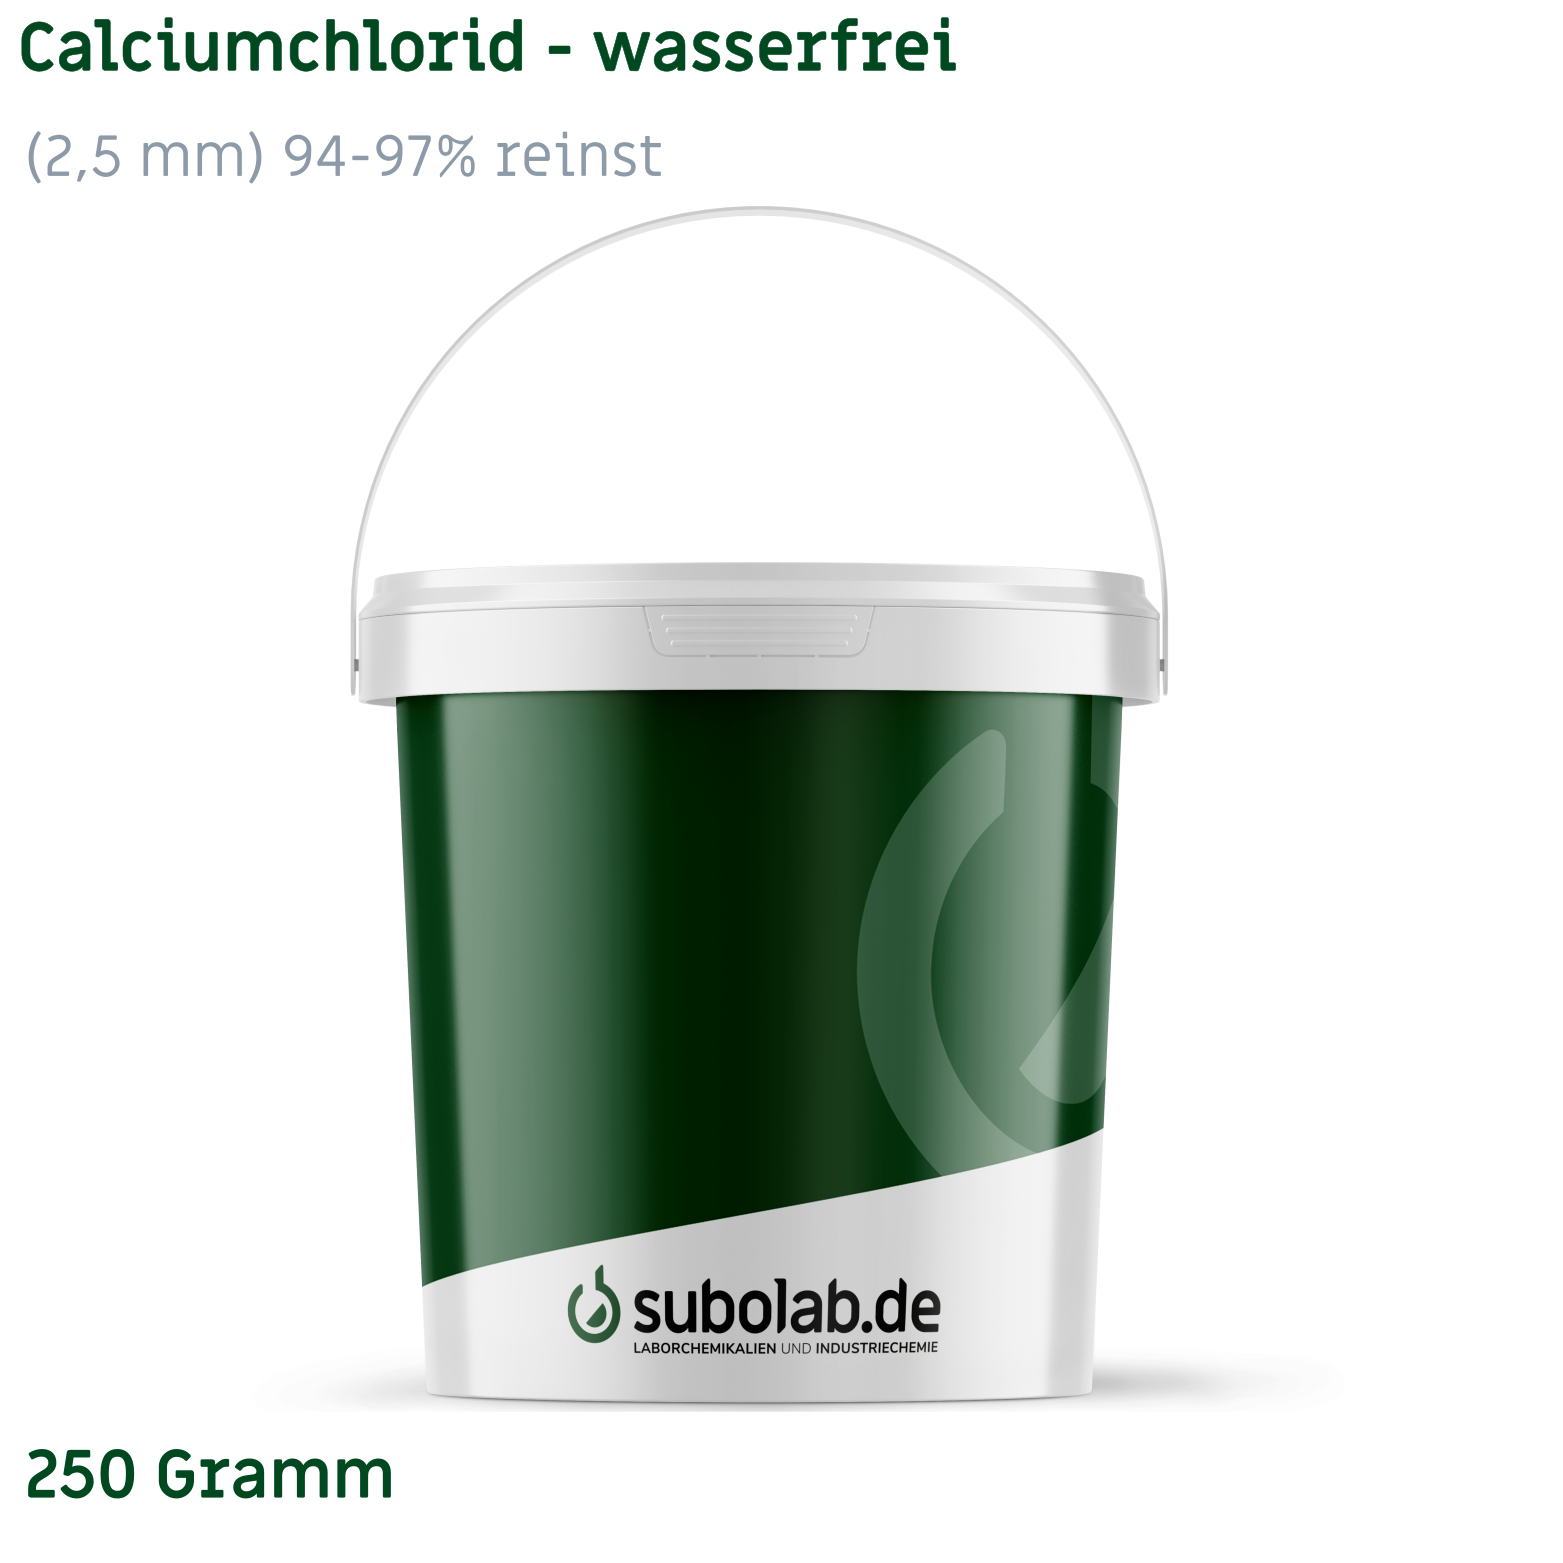 Bild von Calciumchlorid - wasserfrei gekörnt (2,5 mm) 94-97% reinst (250 Gramm)